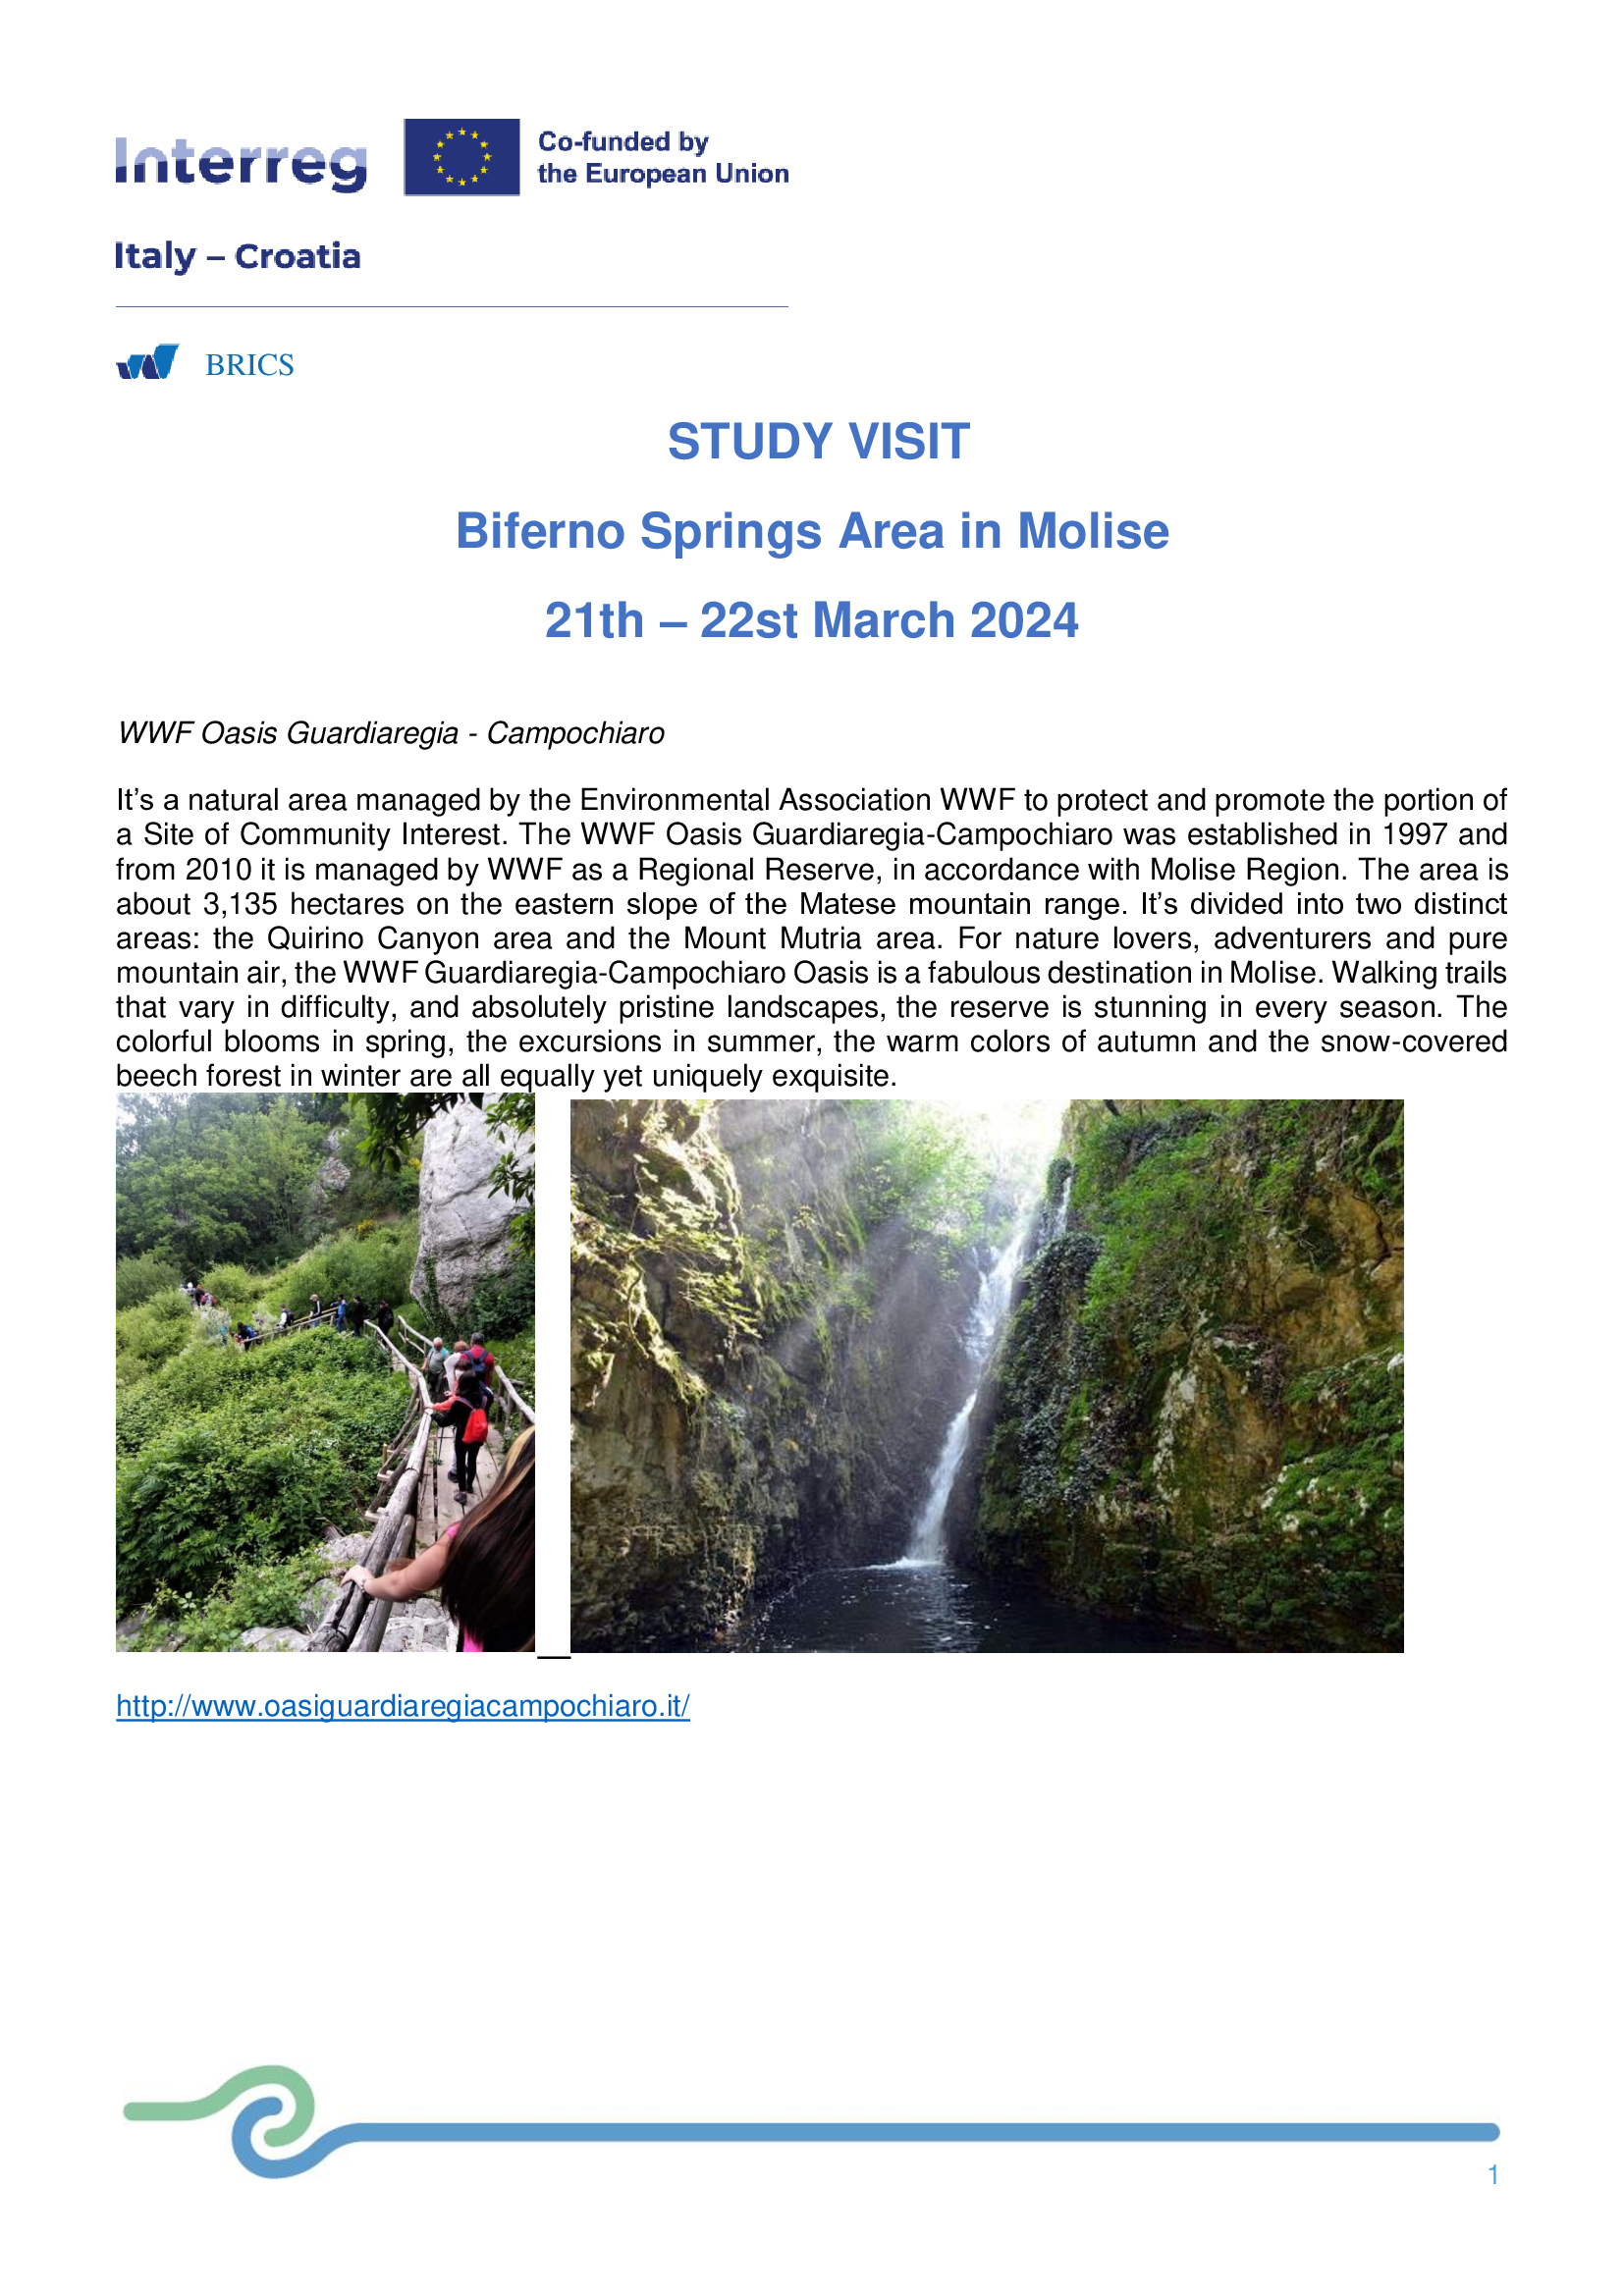 Progetto-BRICS-Sorgenti-del-Biferno-Study-Visit-Oasi-WWF-21.03.2024